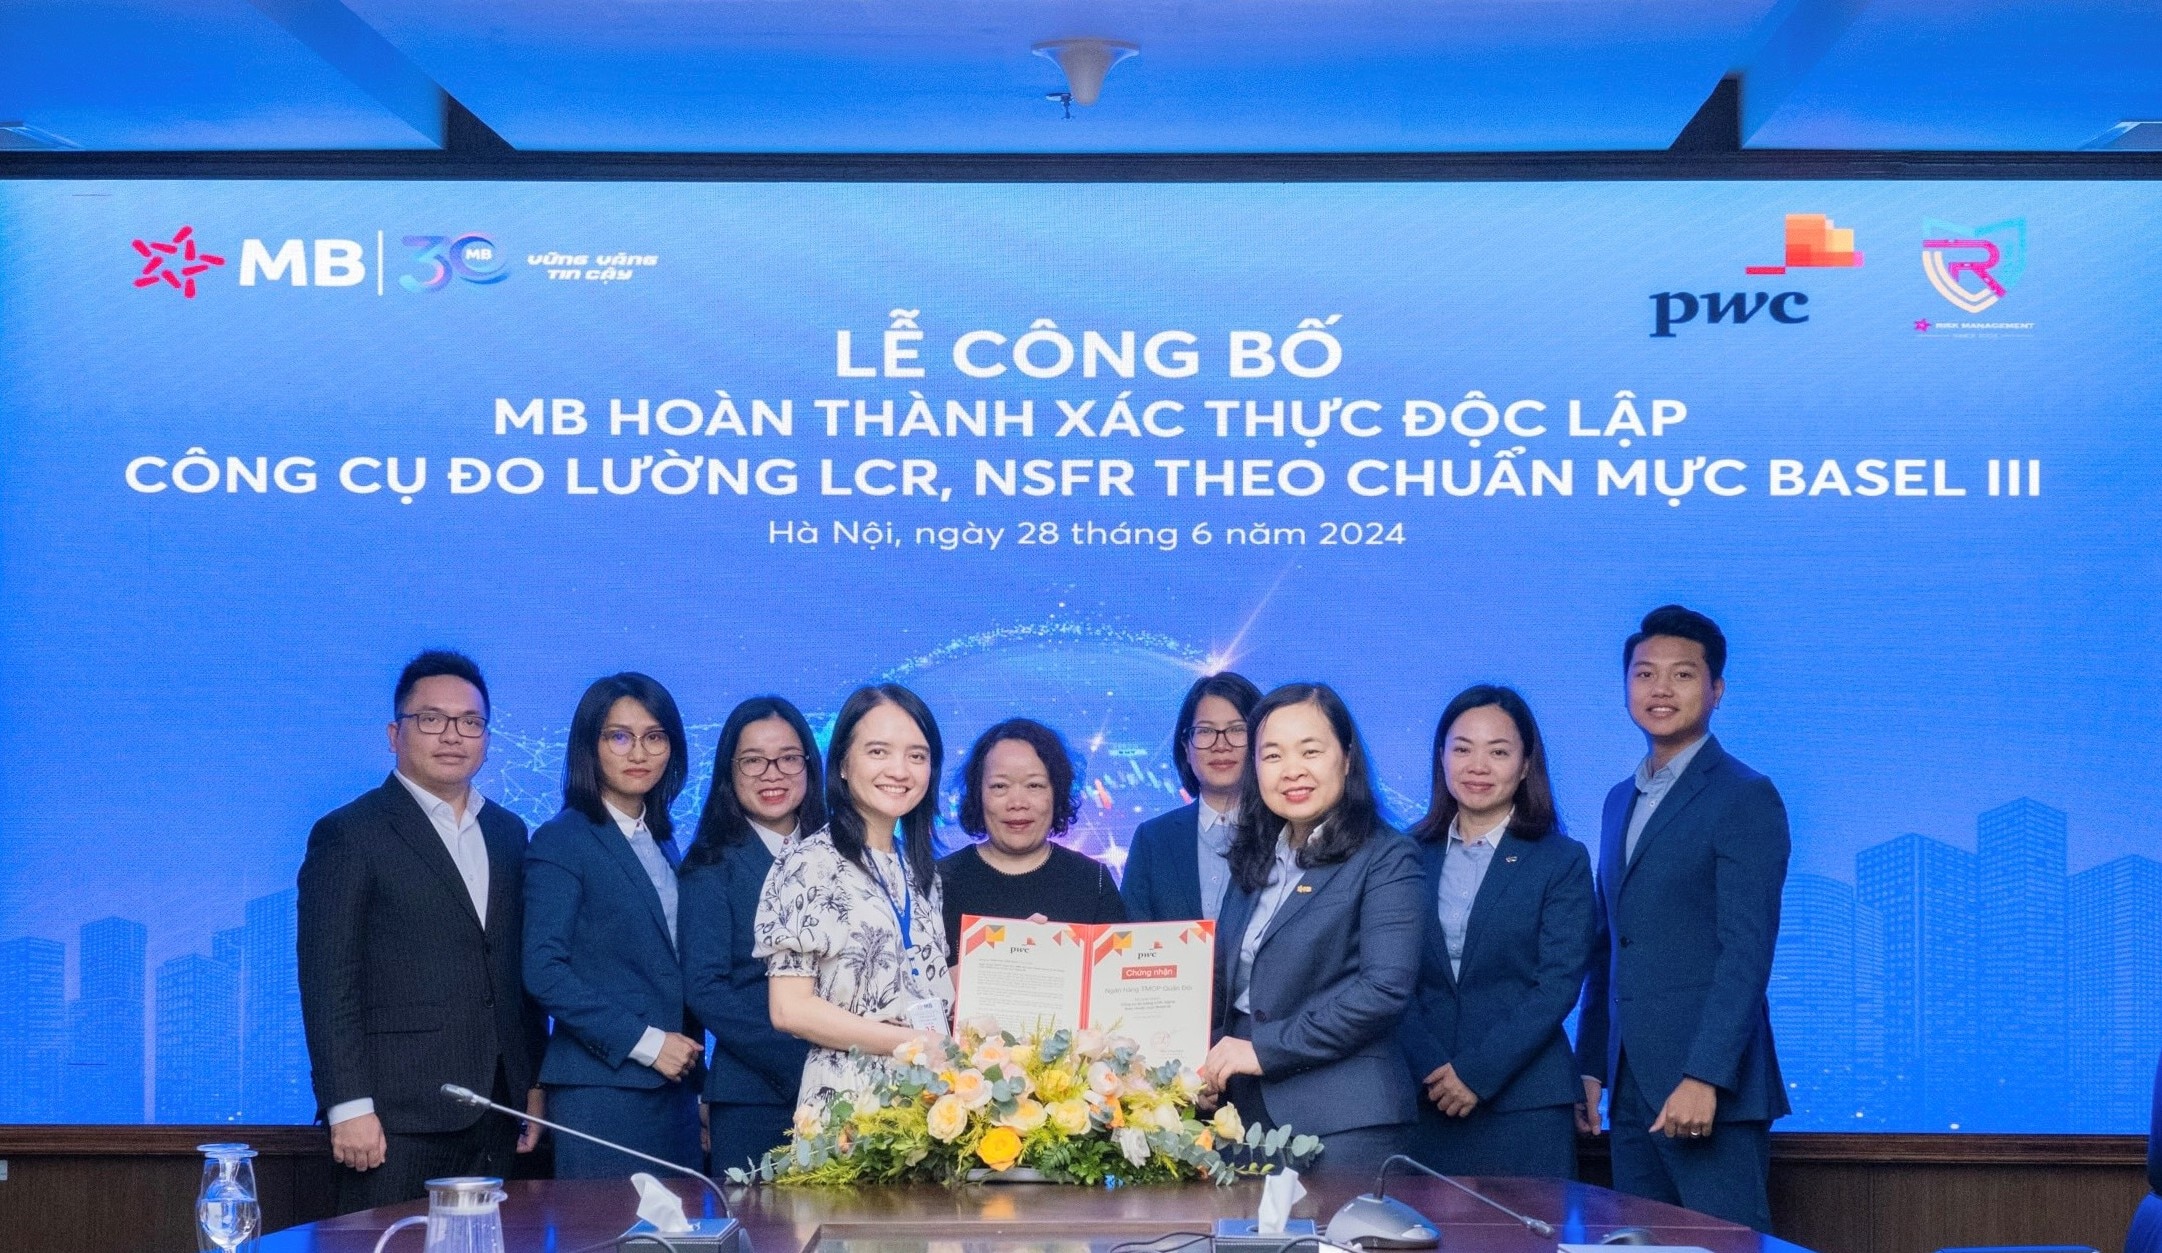 Bà Phạm Thị Trung Hà – Phó Tổng giám đốc MB nhận giấy chứng nhận hoàn thành xác thực độc lập công cụ đo lường LCR, NSFR theo chuẩn mực Basel III (Ảnh: MB)